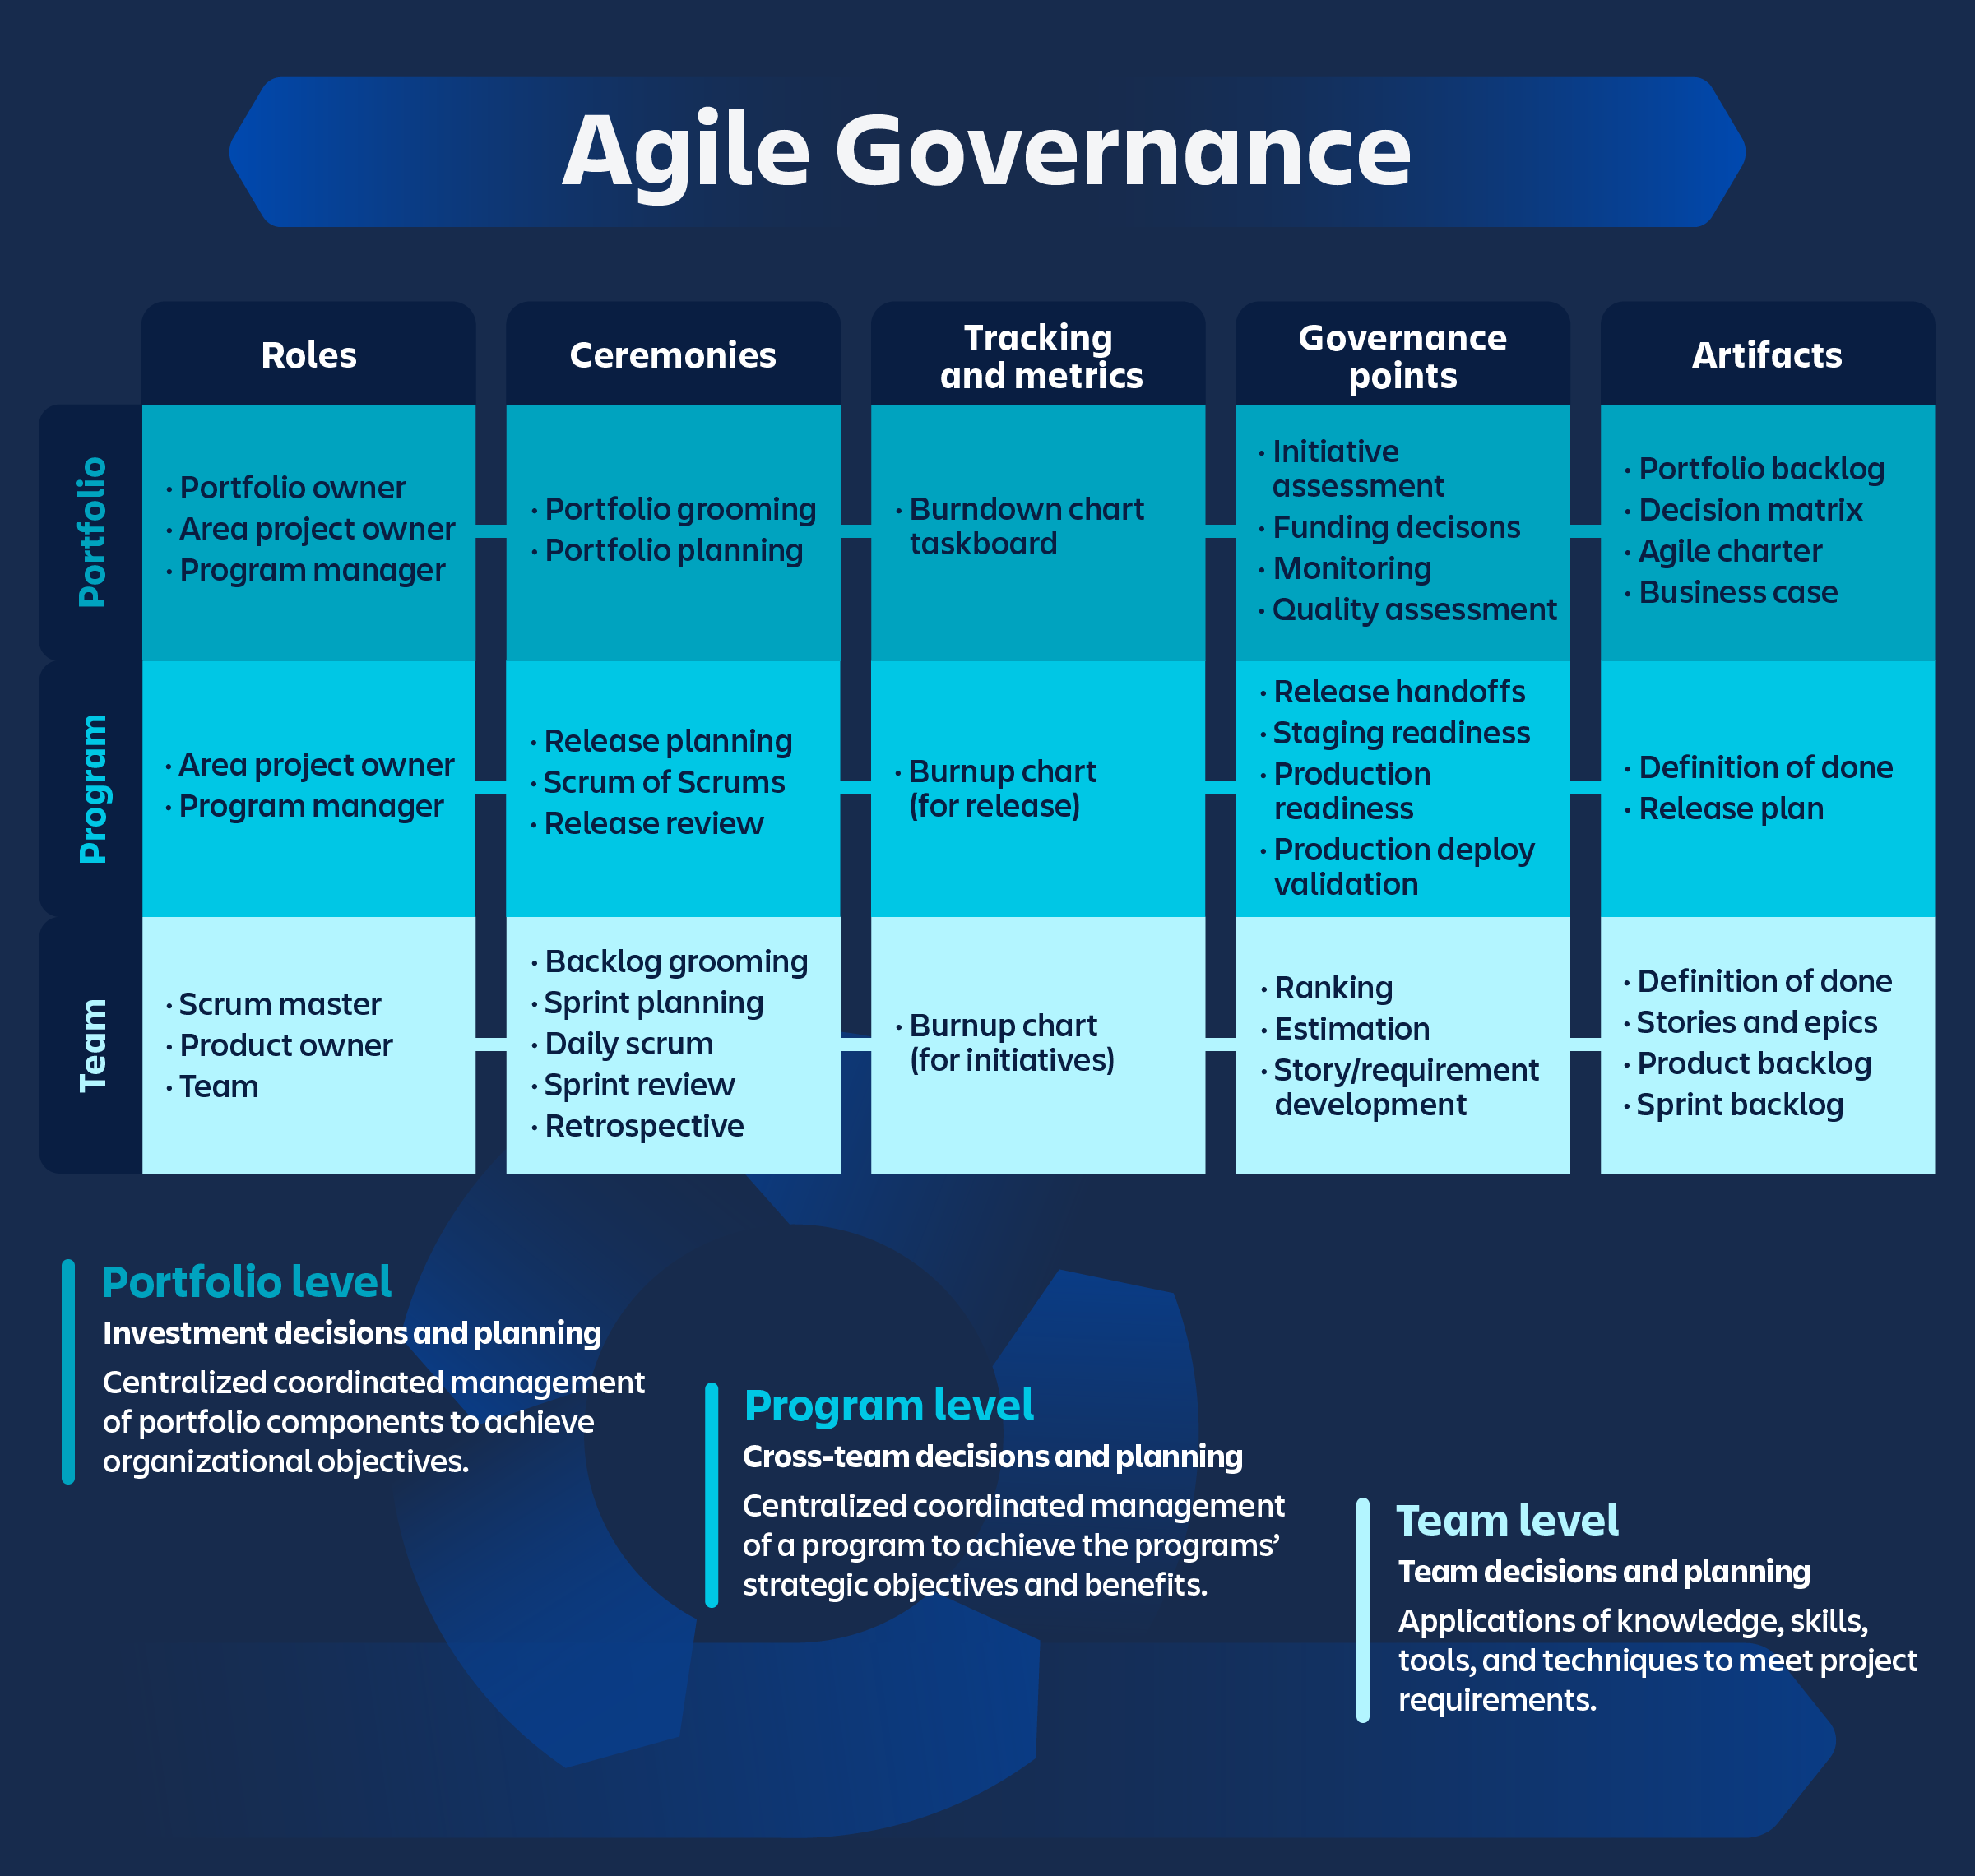 Diagramma e descrizione della governance Agile